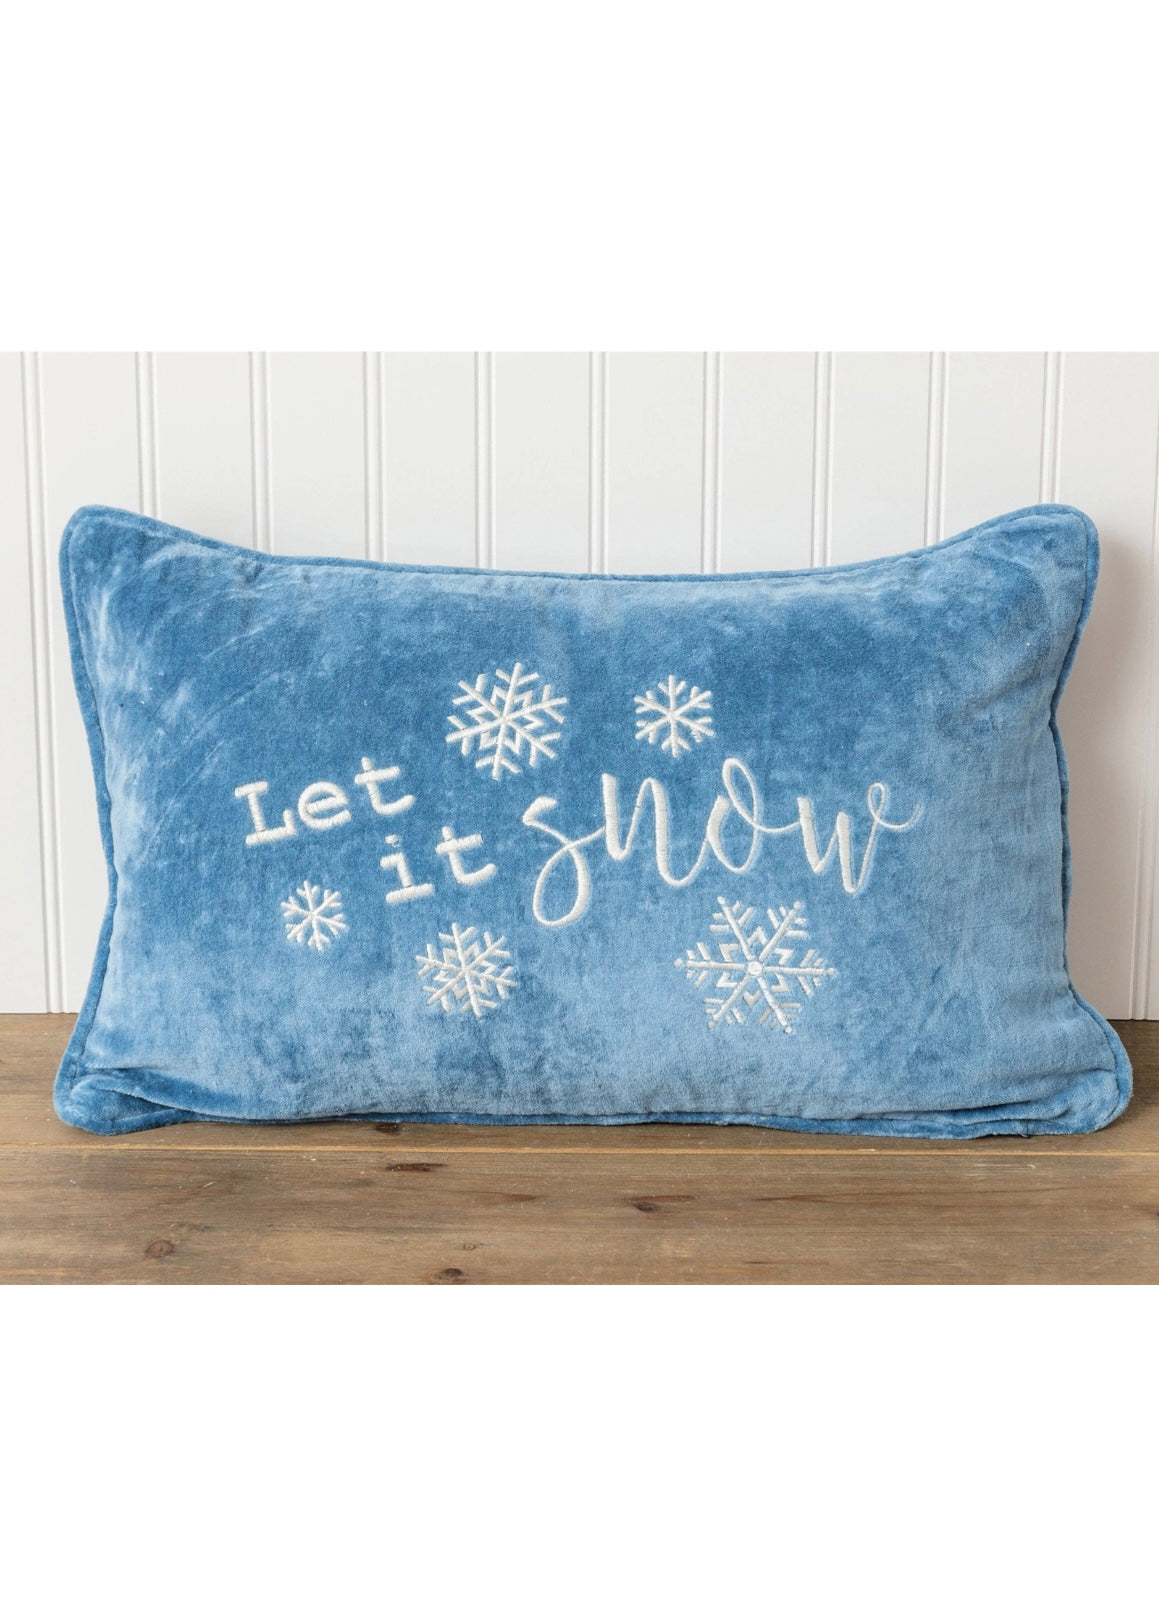 Pillow - Let It Snow